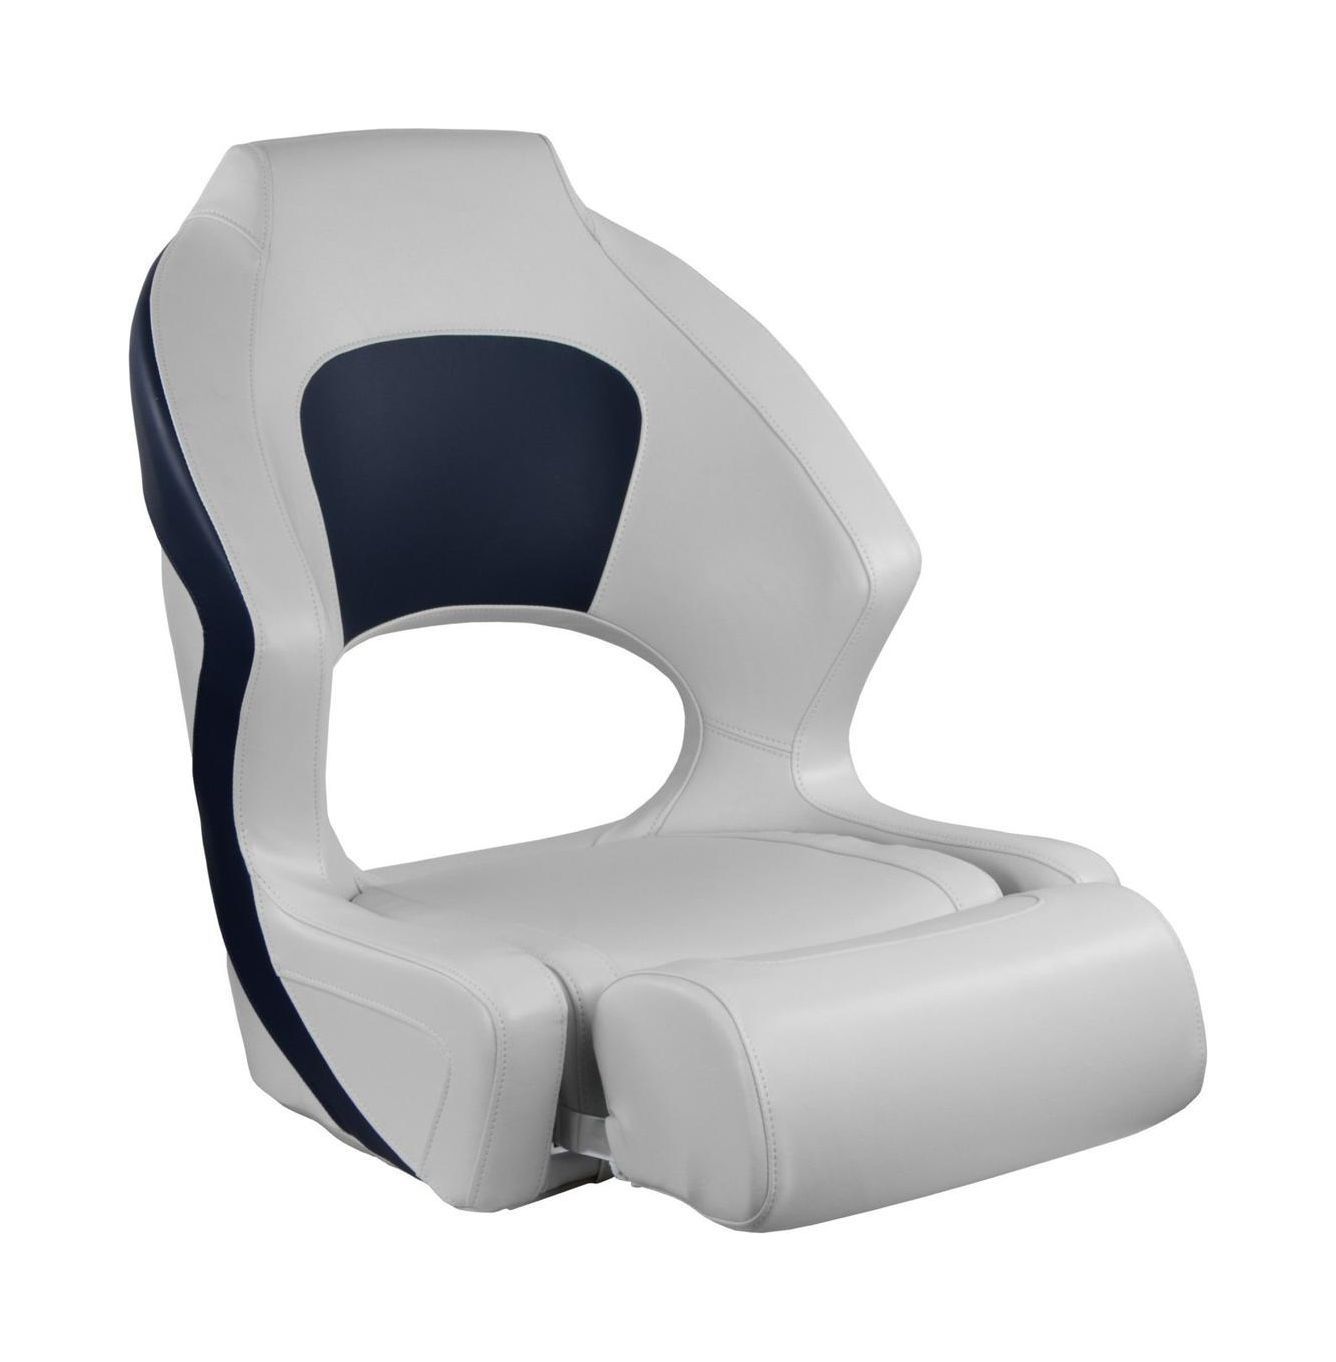 Кресло мягкое Deluxe Sport, с откидным валиком, белый/синий 1043251 кресло мягкое deluxe sport с откидным валиком белый синий 1043251